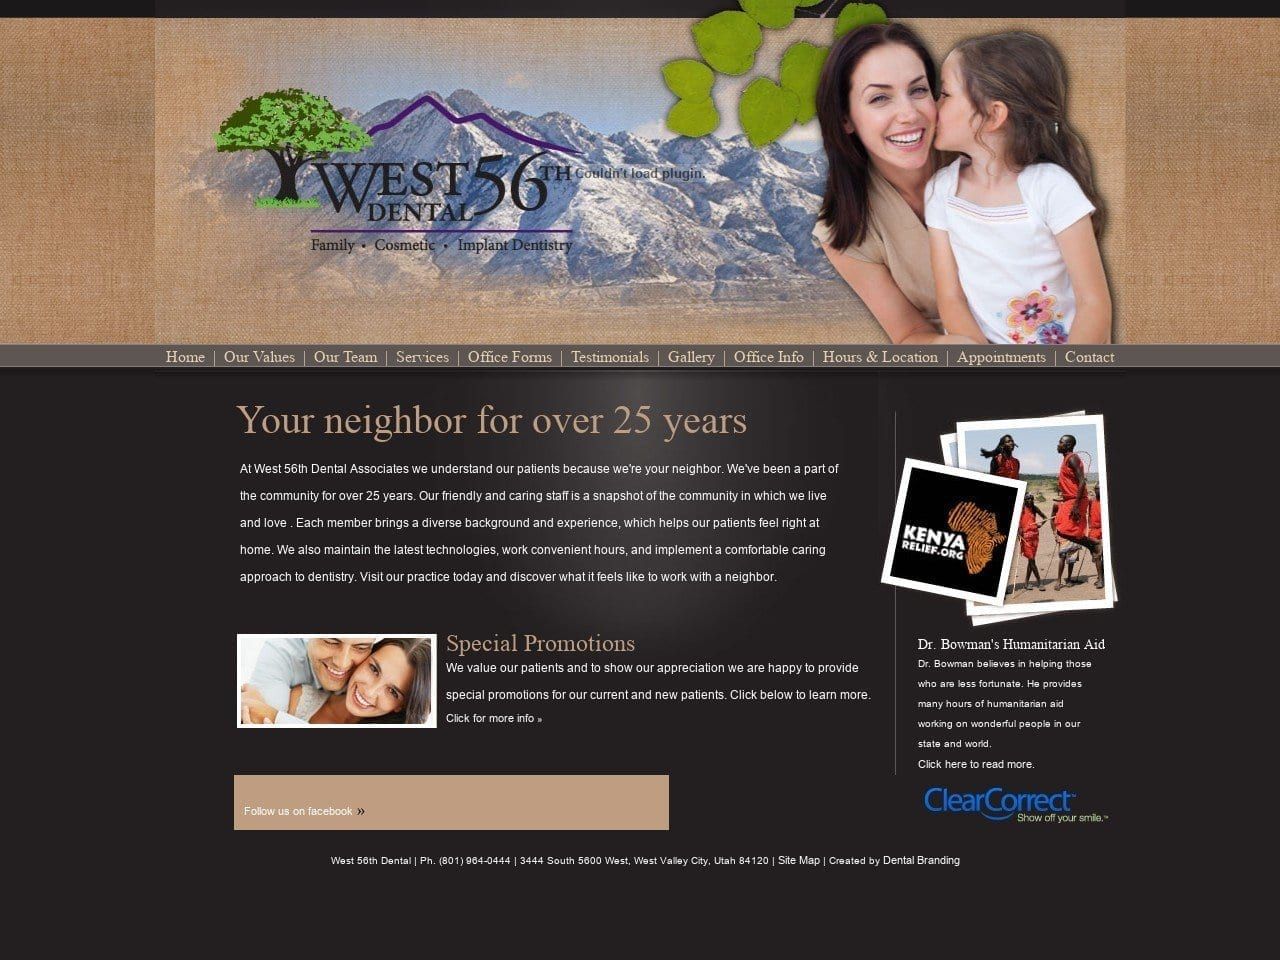 West 56th Dental Associates Website Screenshot from west56thdental.com